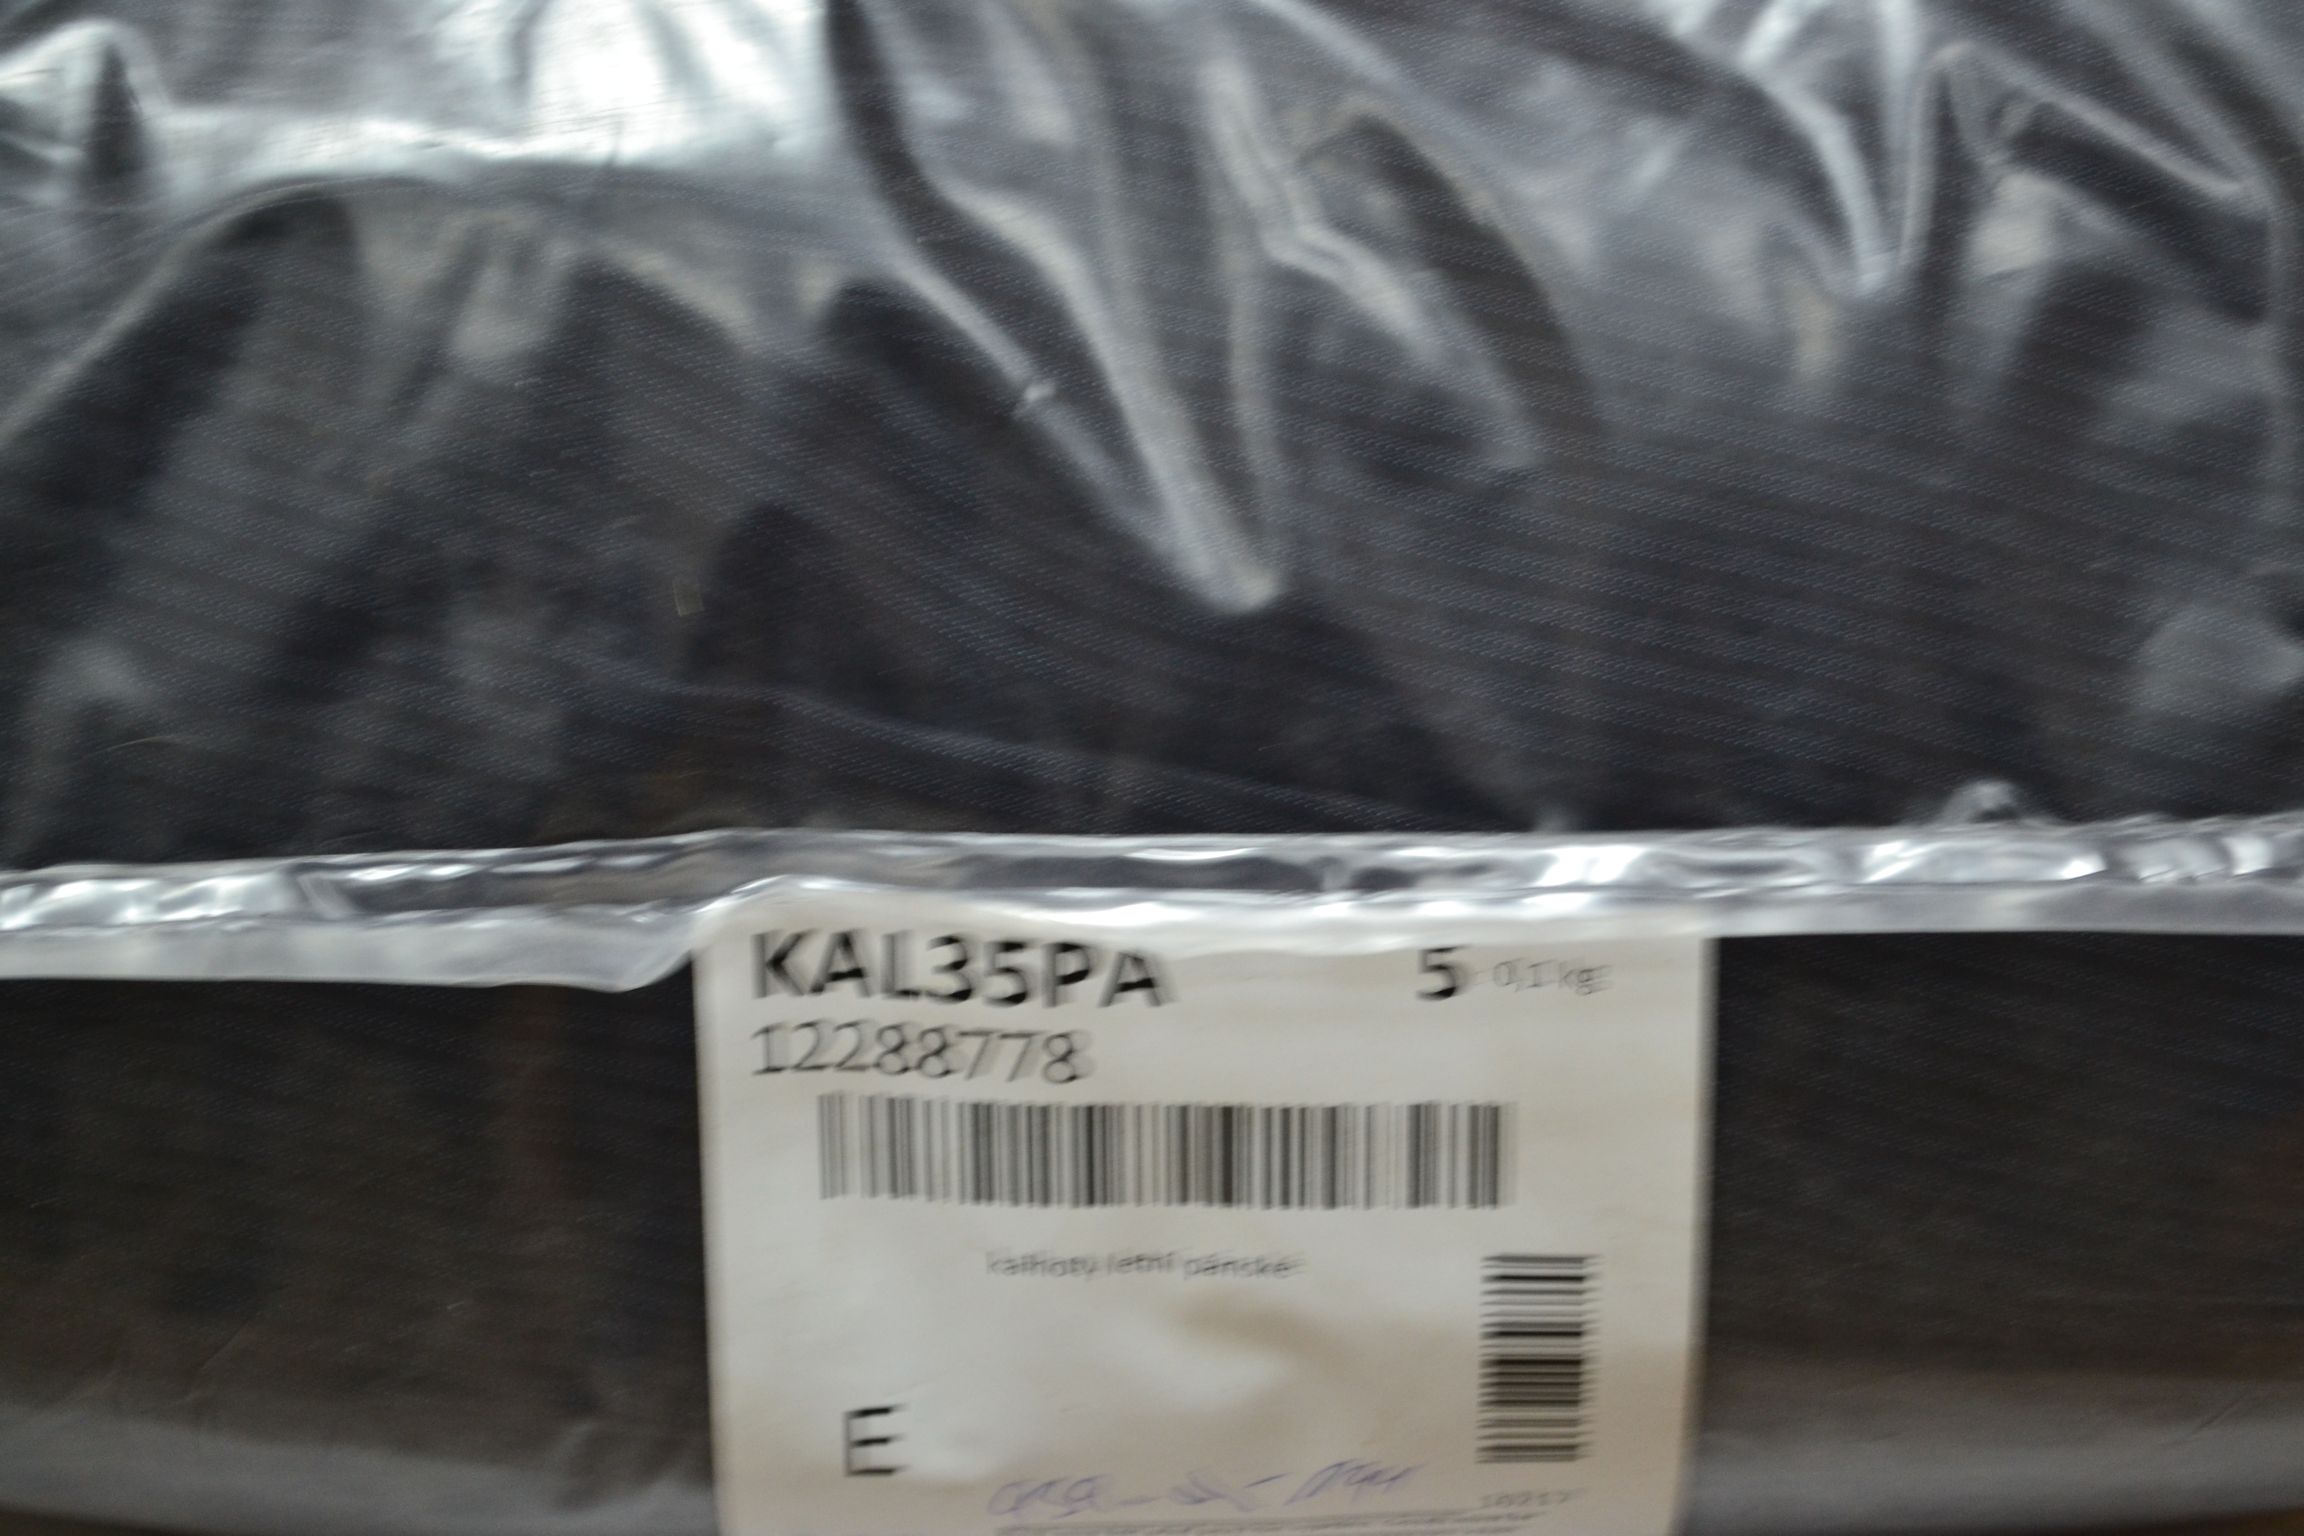 KAL35PA; Мужские летние брюки; код мешка 12288778